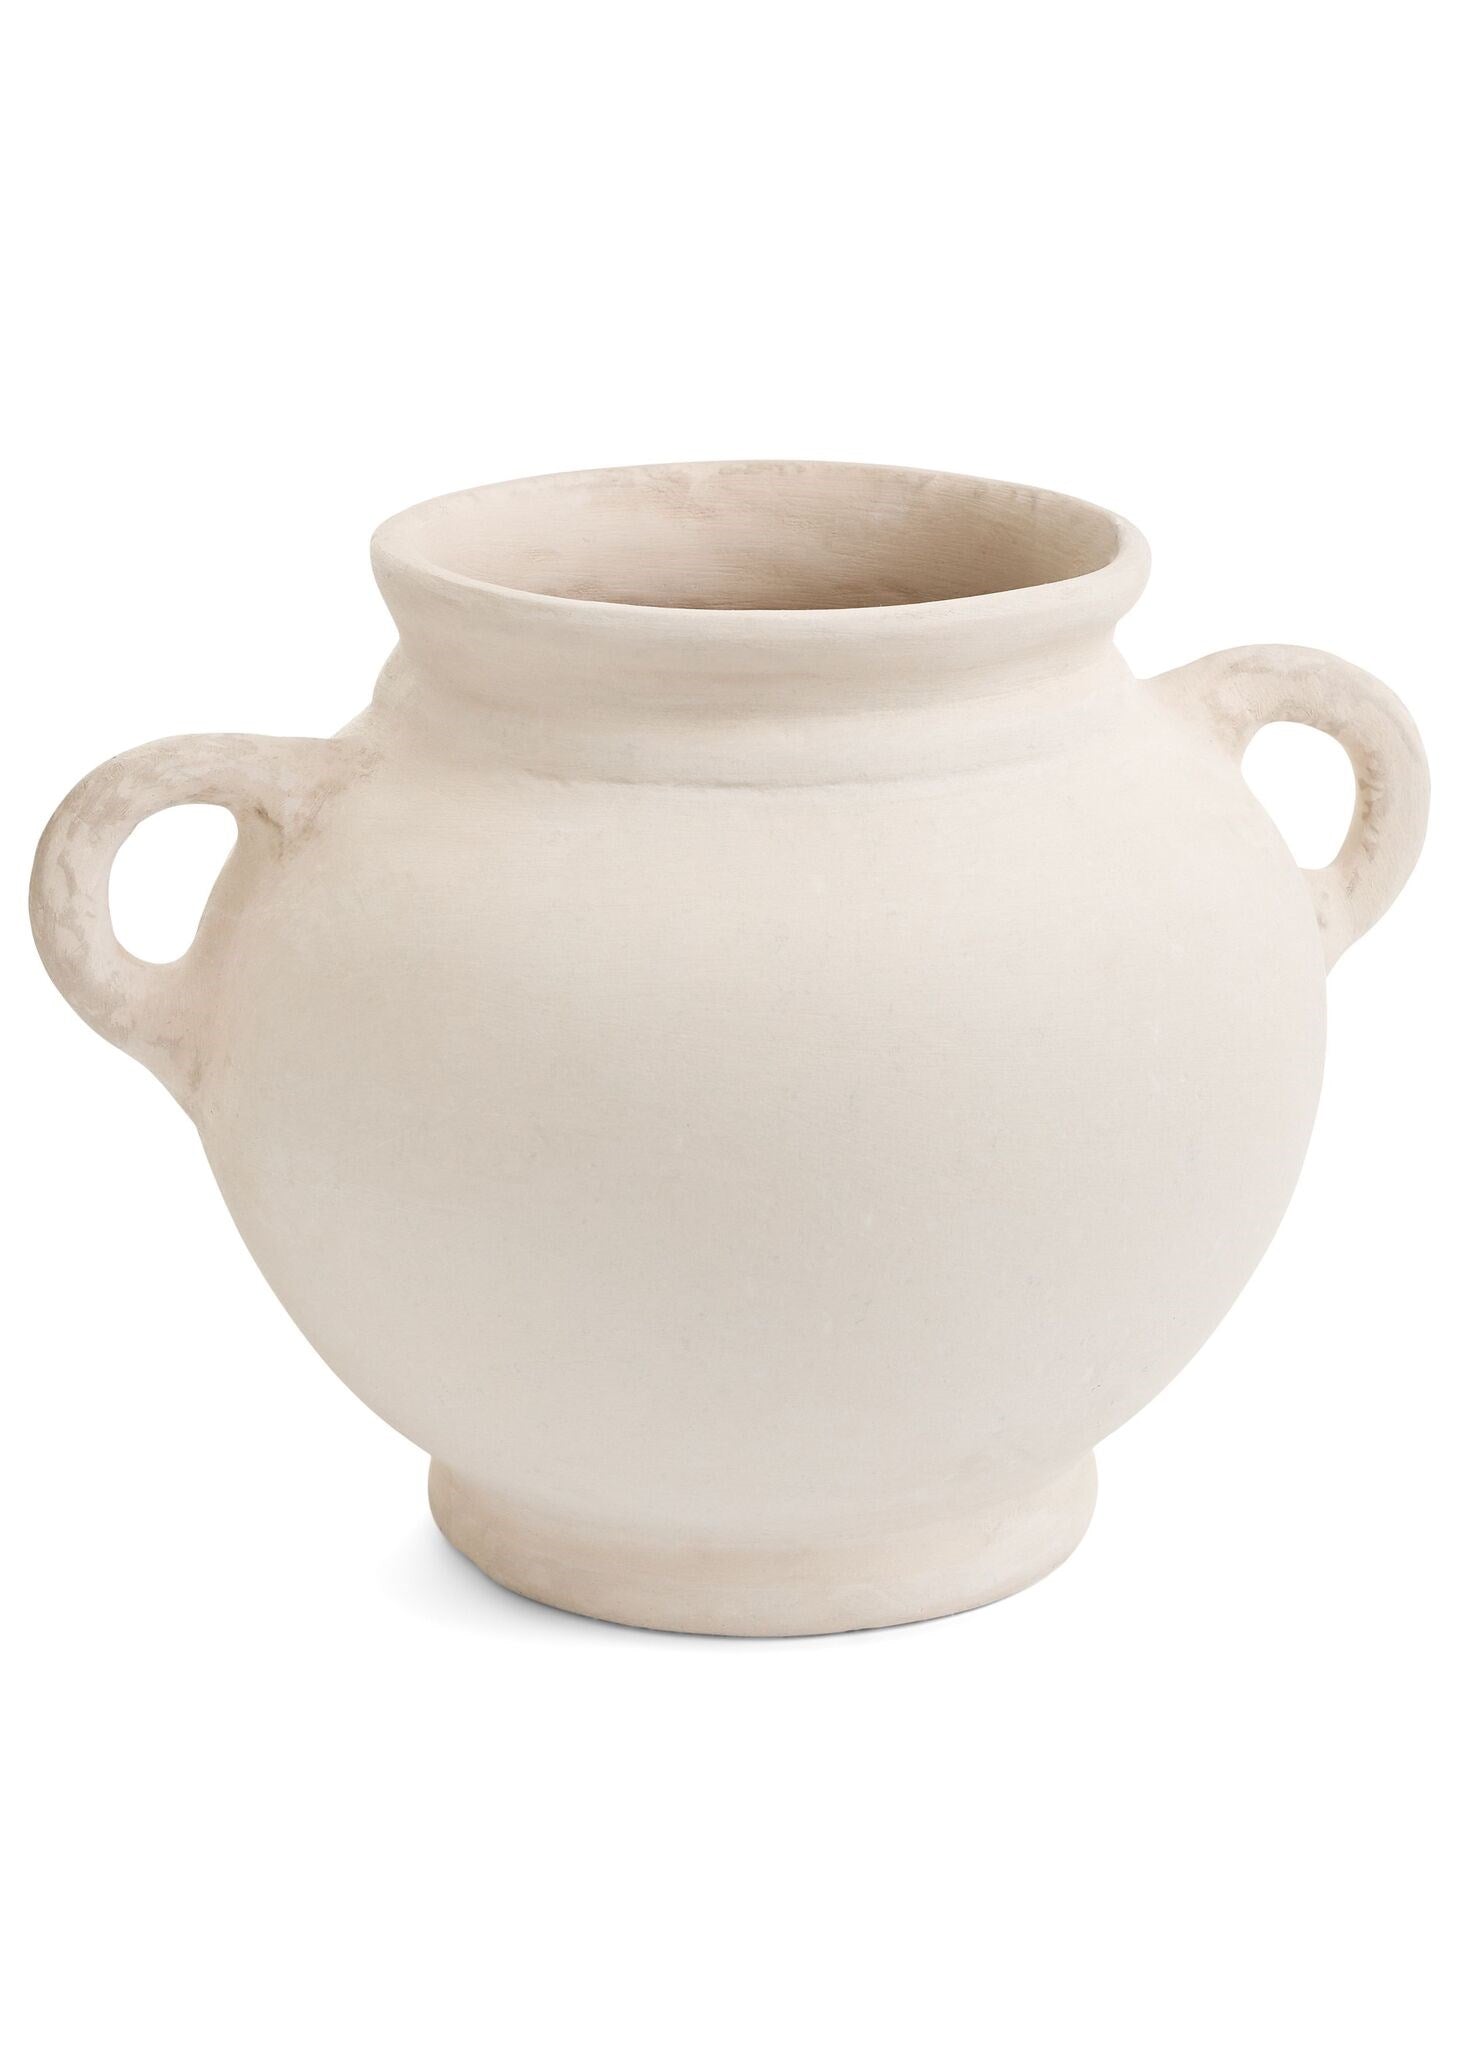 Grecian Vase with Handles: (Prebook)